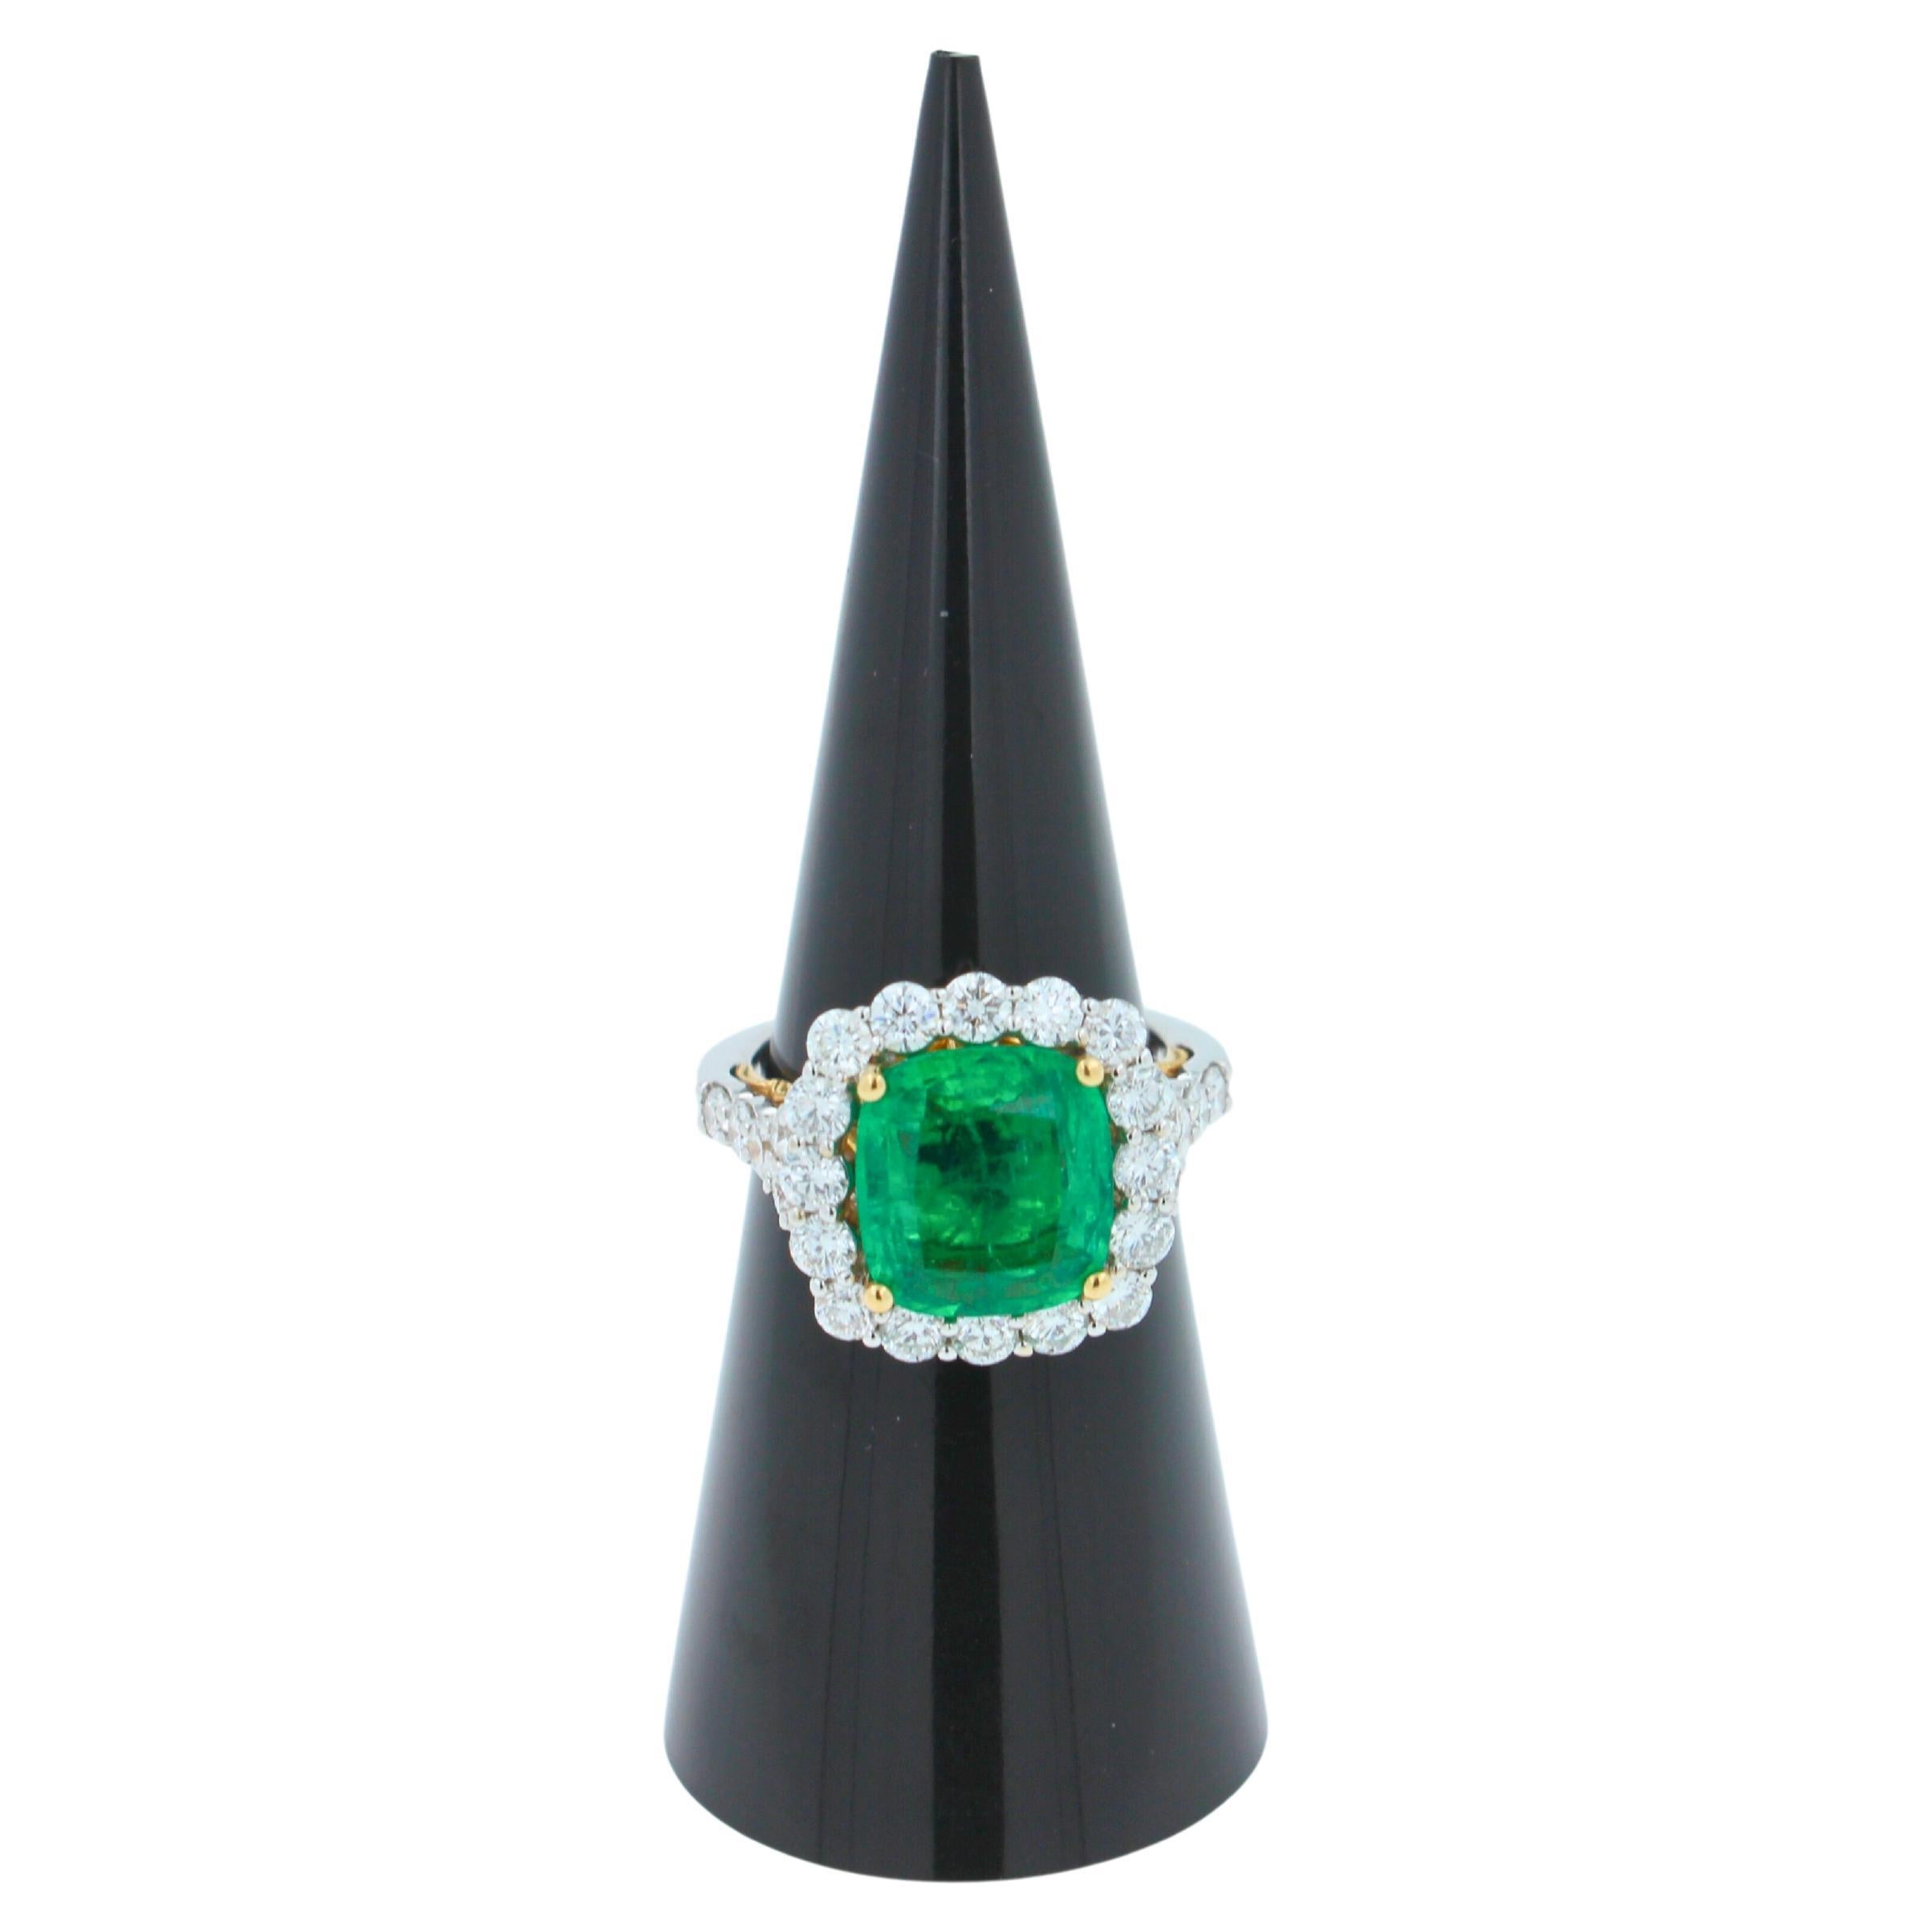 10,70 mm x 9,50 mm Stanz-/Formteil
Smaragd mit mittelhellgrüner Farbe und lebendigen, samtigen Farbtönen 
6,50 Karat Smaragd
1,70 Karat G/VS Diamanten
14K Weiß & Gelbgold Ring
7,60 Gramm
Größe 6